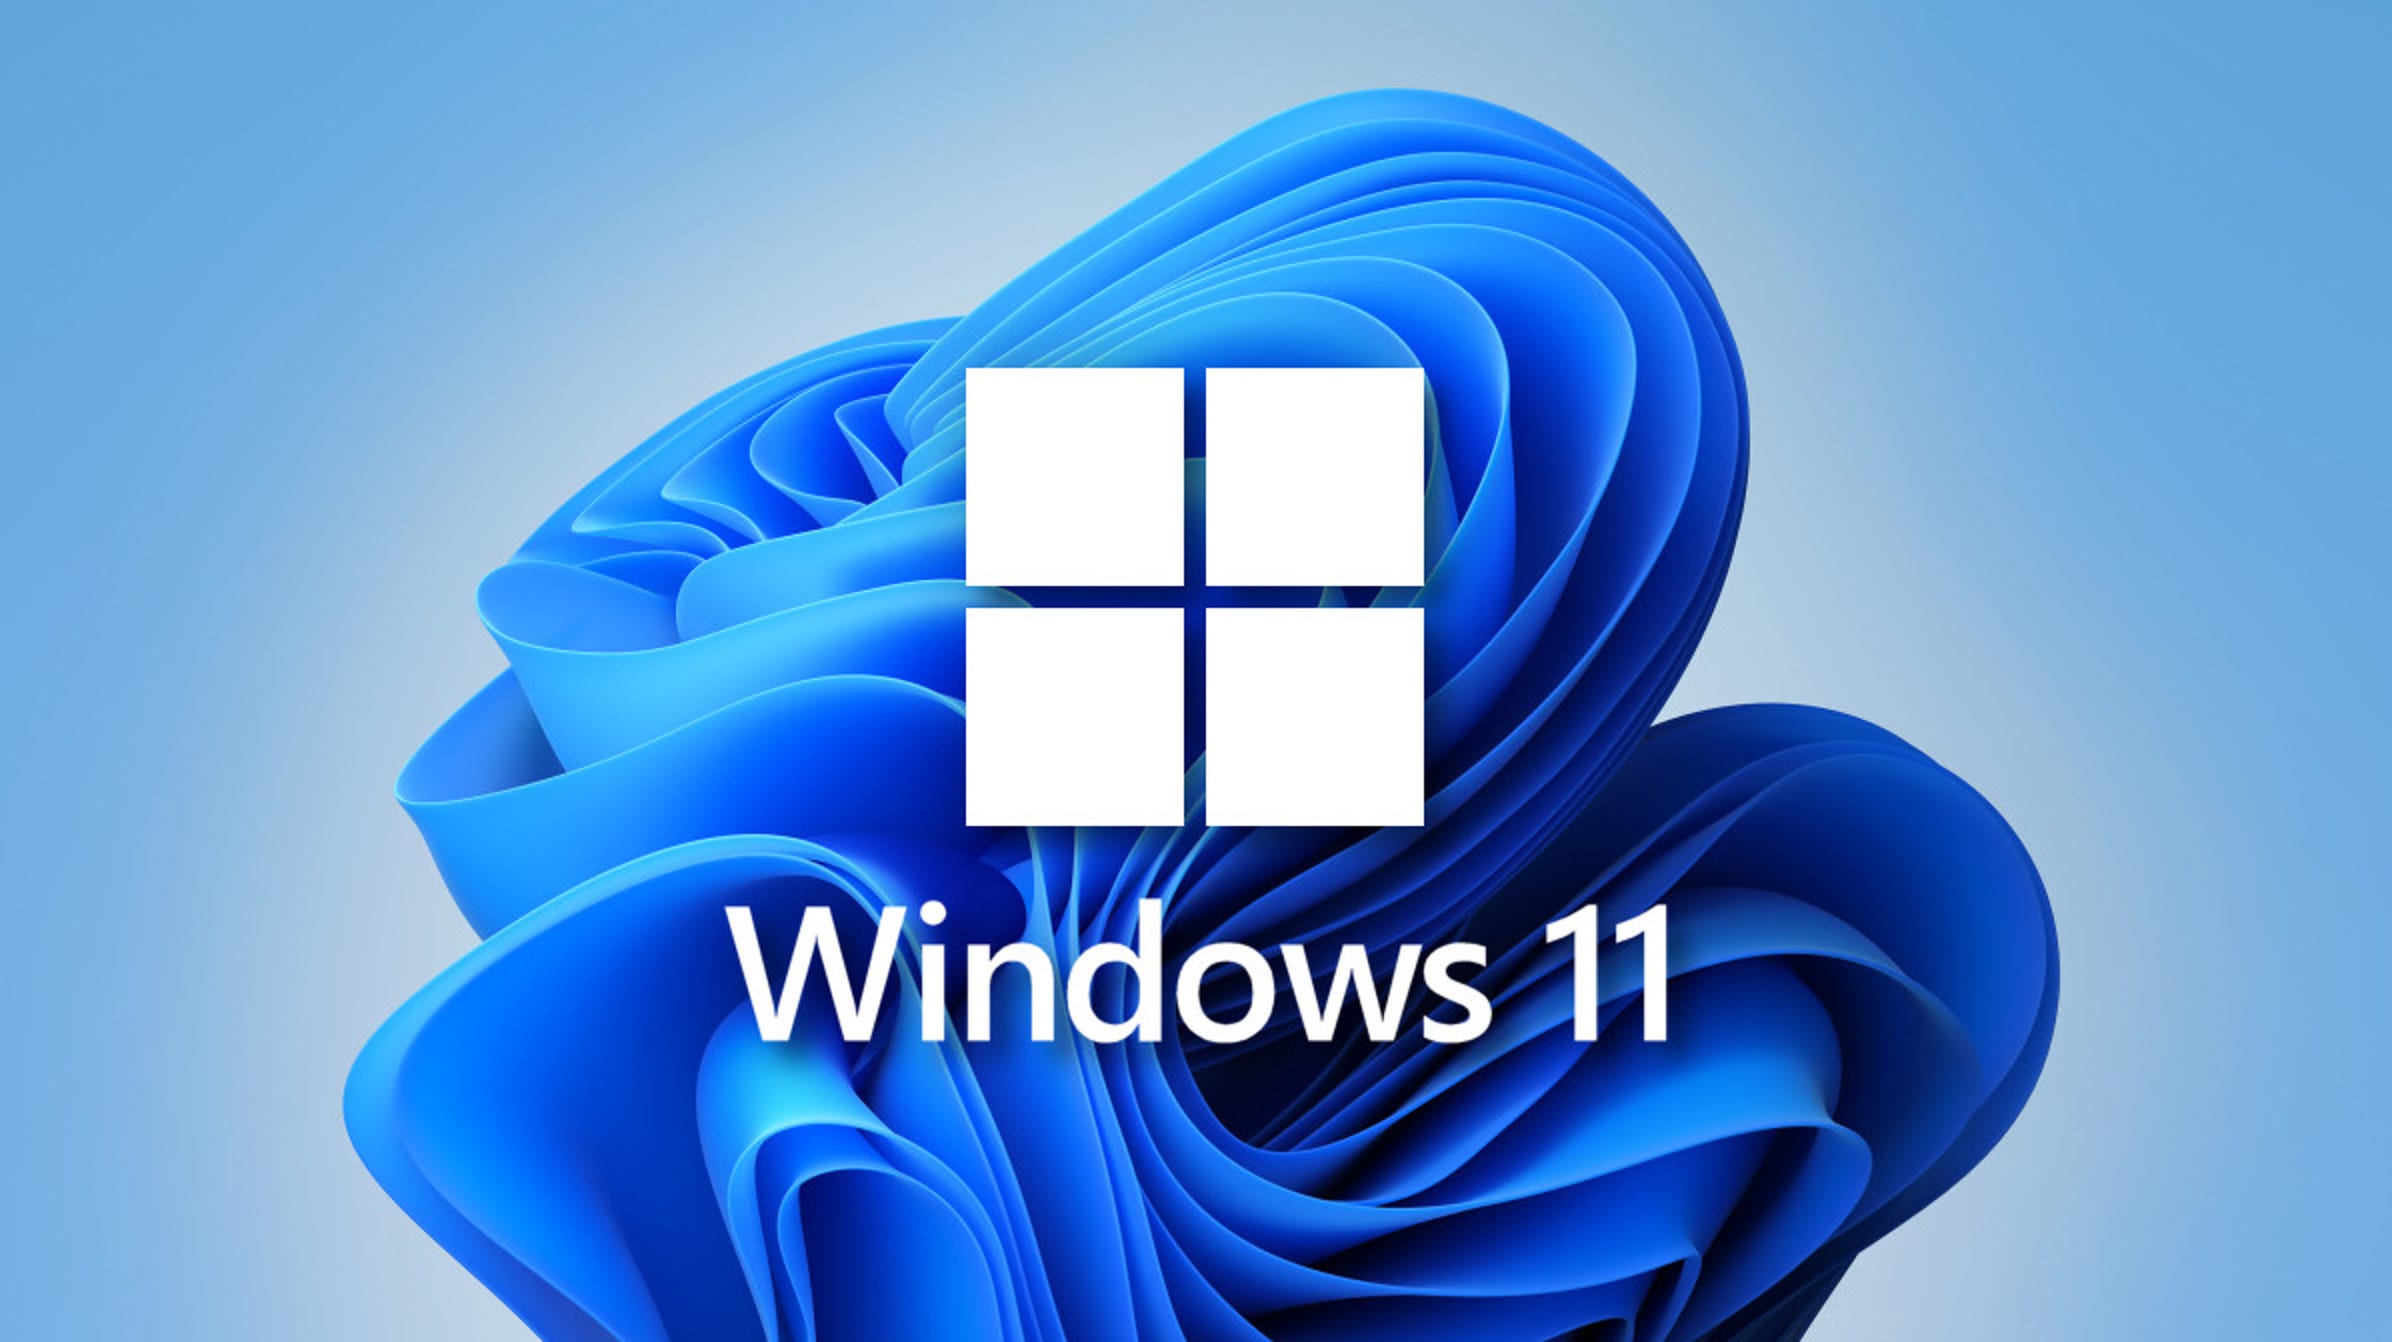 Gli utenti di Windows 10 hanno iniziato a ricevere nuovi annunci pubblicitari che chiedono loro di passare a Windows 11